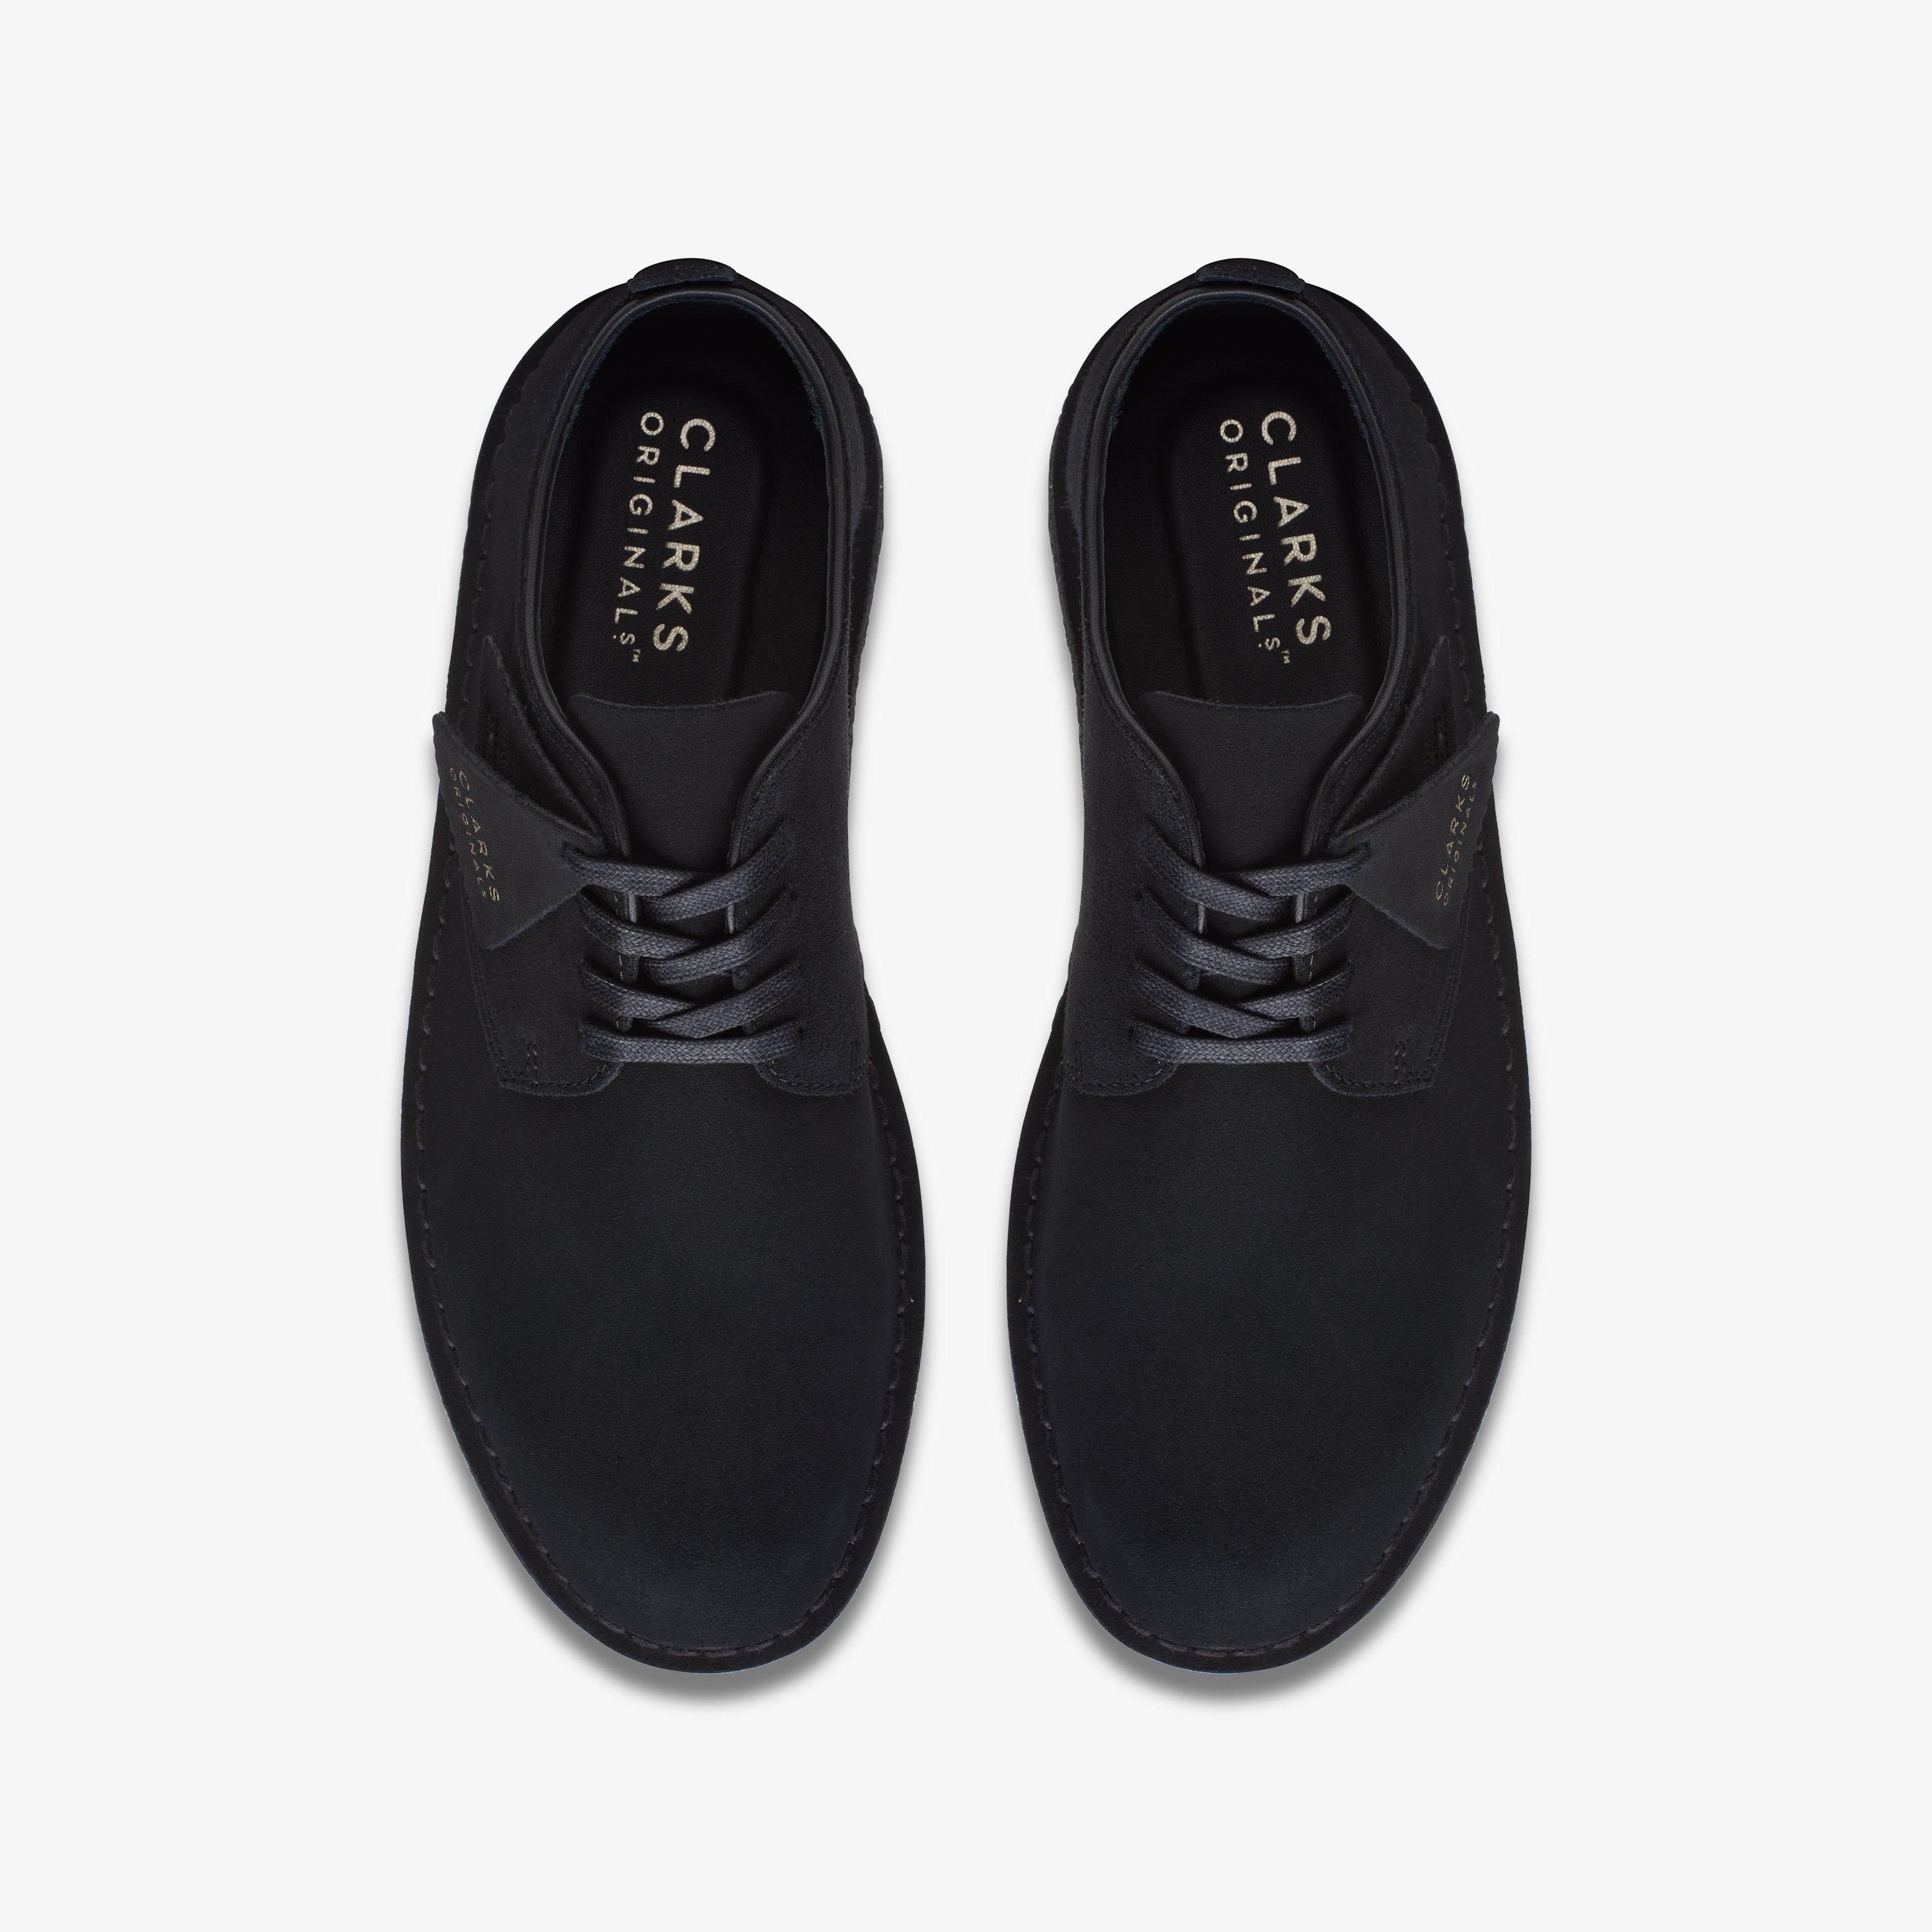 CLARKS ORIGINALS: Zapatos abotinados para hombre, Azul Oscuro  Zapatos  Abotinados Clarks Originals 174036 en línea en